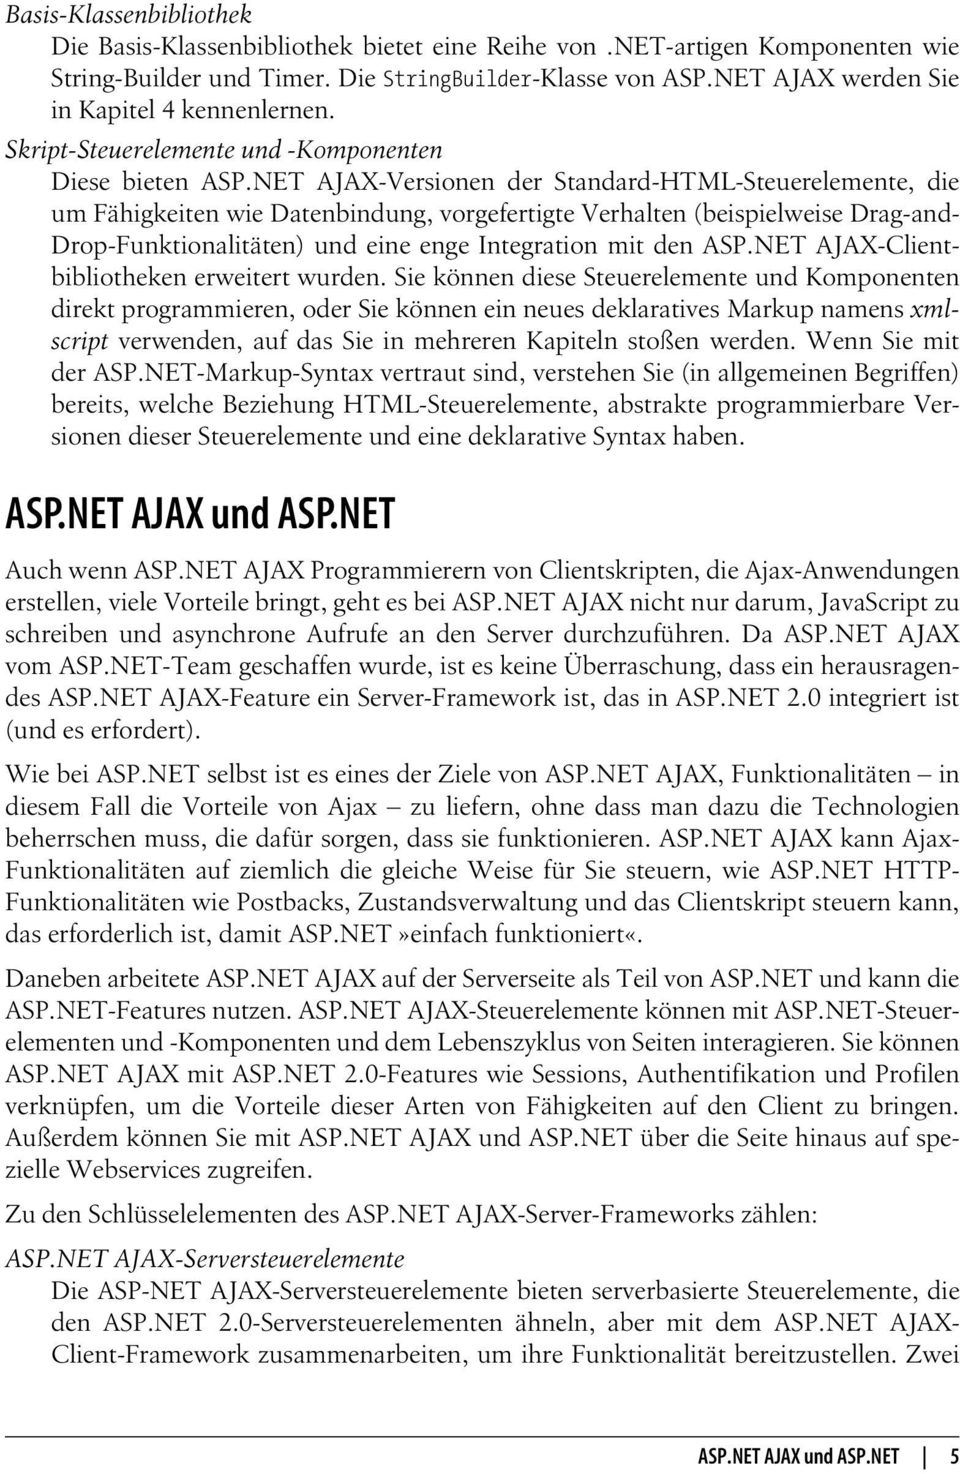 NET AJAX-Versionen der Standard-HTML-Steuerelemente, die um Fähigkeiten wie Datenbindung, vorgefertigte Verhalten (beispielweise Drag-and- Drop-Funktionalitäten) und eine enge Integration mit den ASP.